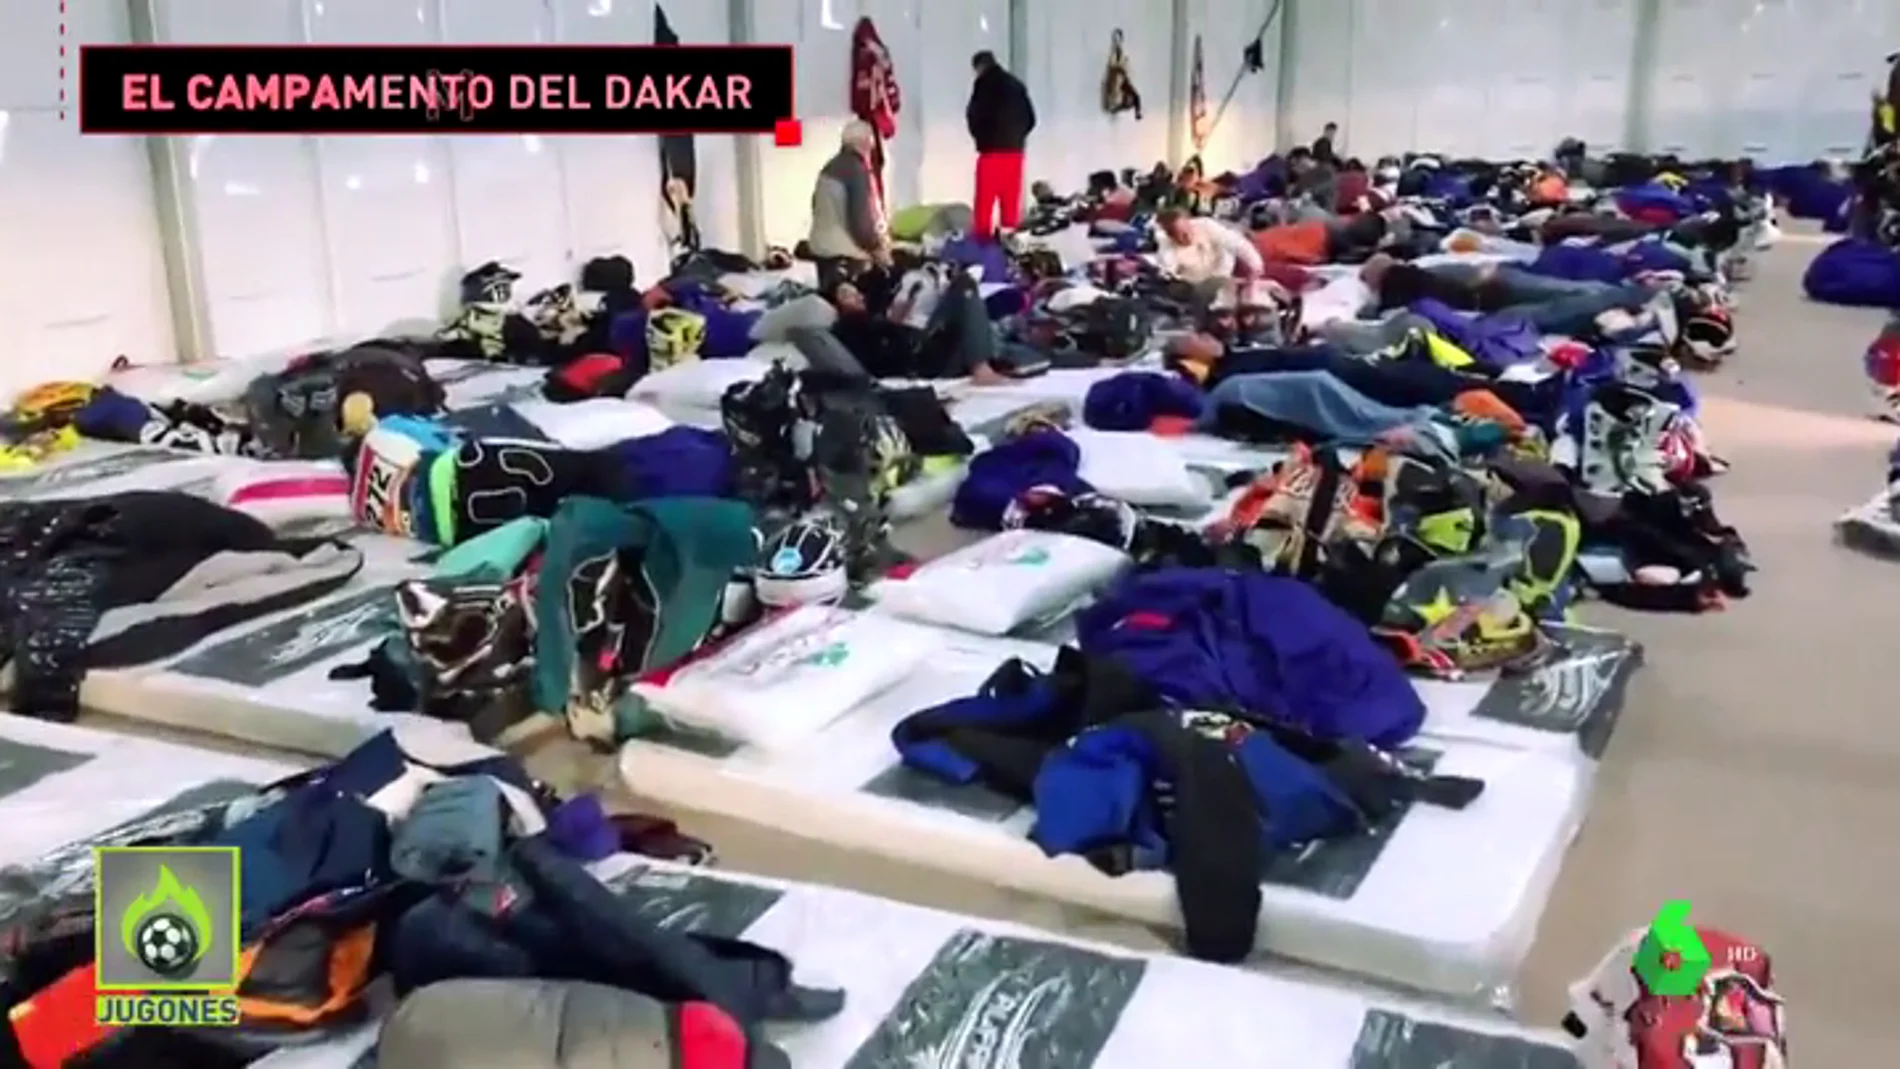 Así es el campamento del Dakar donde durmieron cientos de pilotos tras la décima etapa